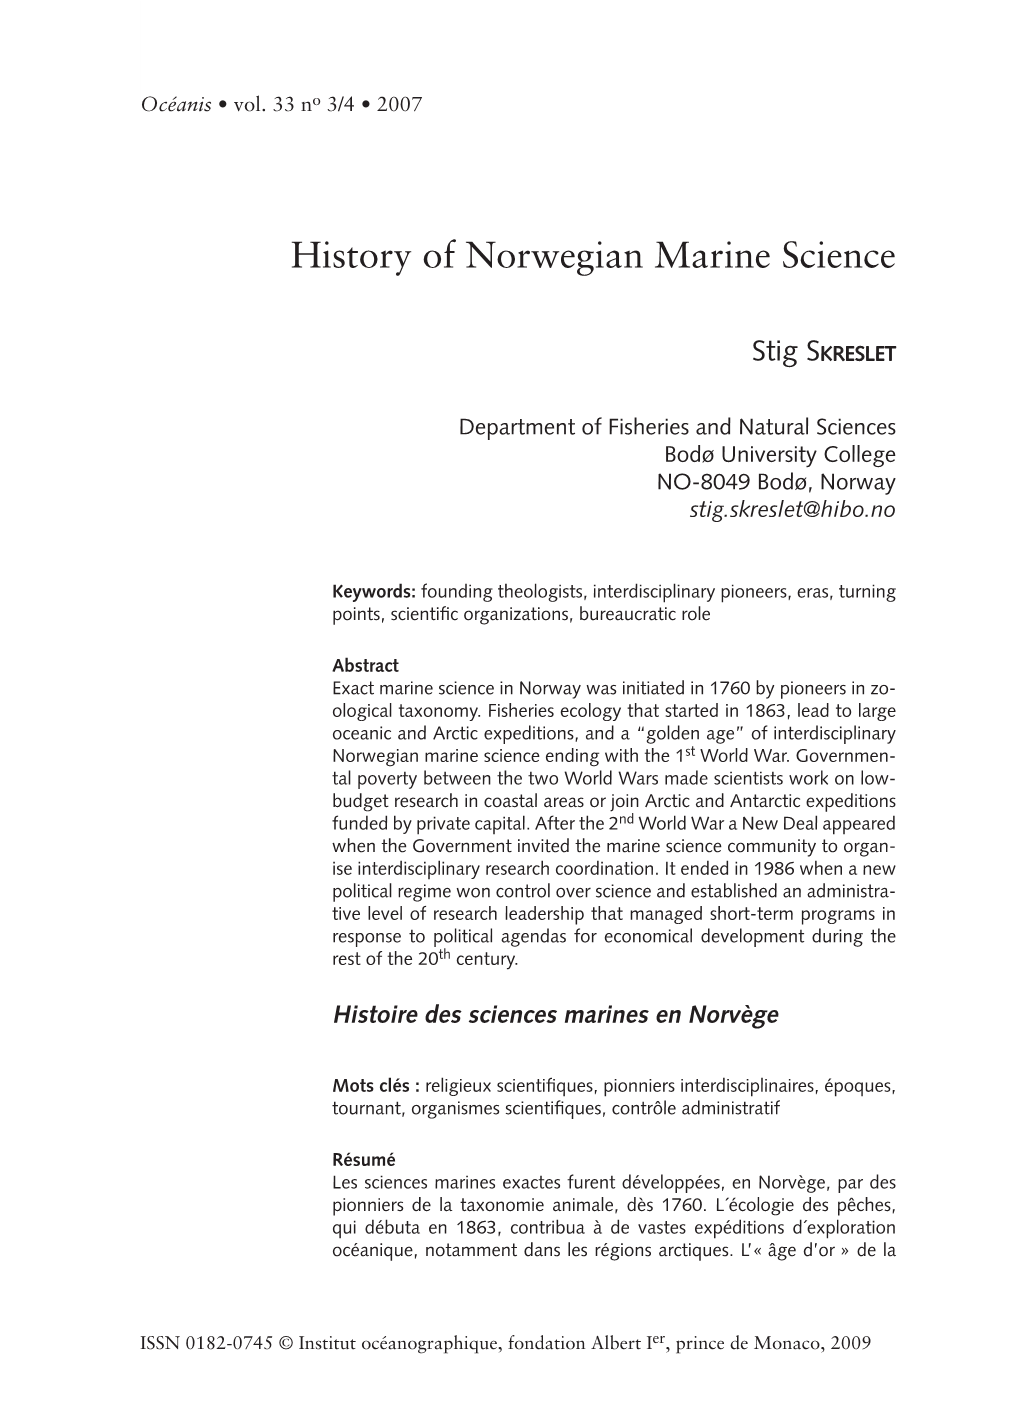 History of Norwegian Marine Science